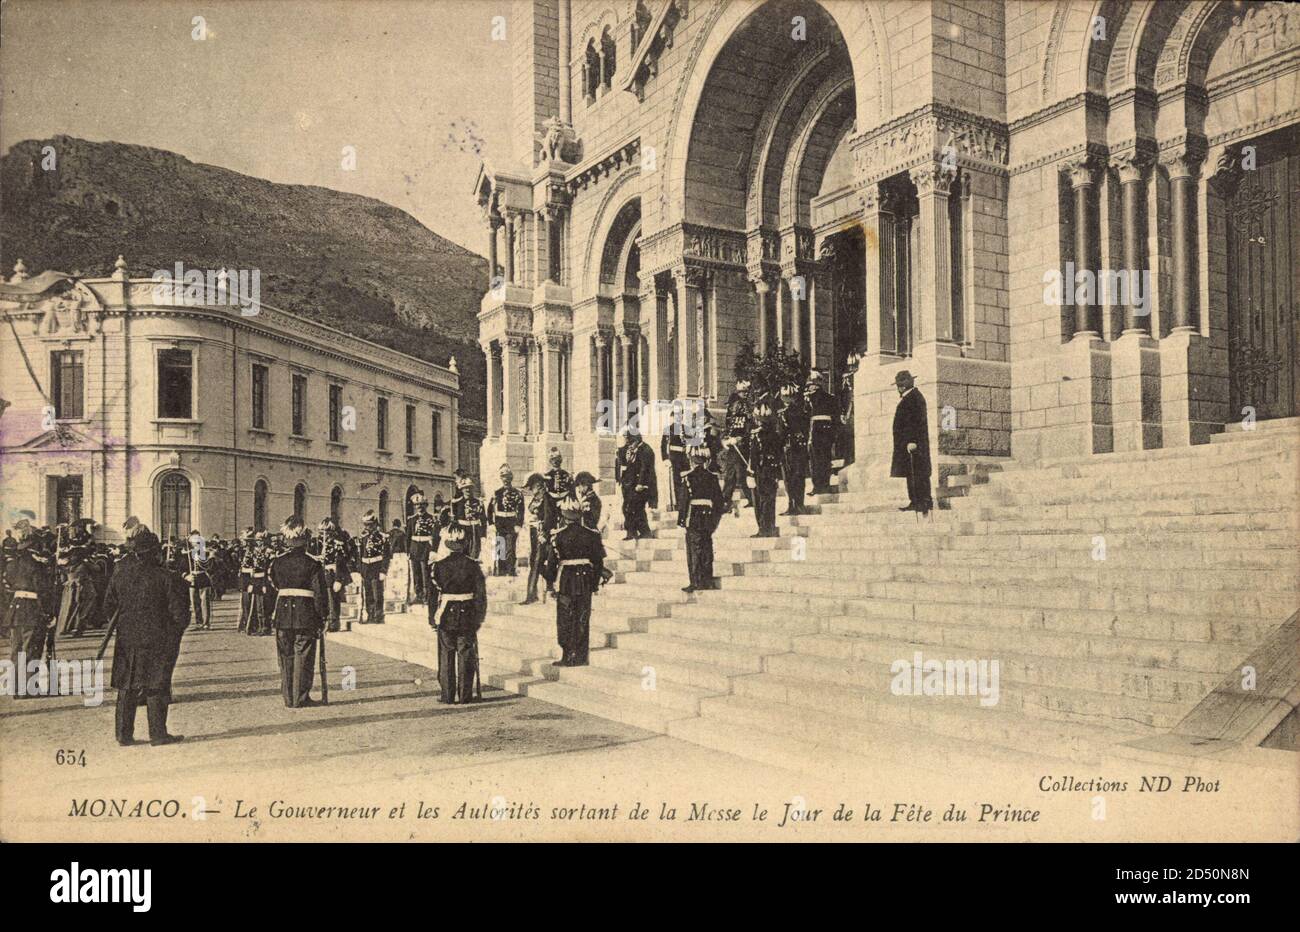 Monaco,Gouverneur,les Autorites sortant de la Messe,Jour de la Fete d.Prince | usage worldwide Stock Photo